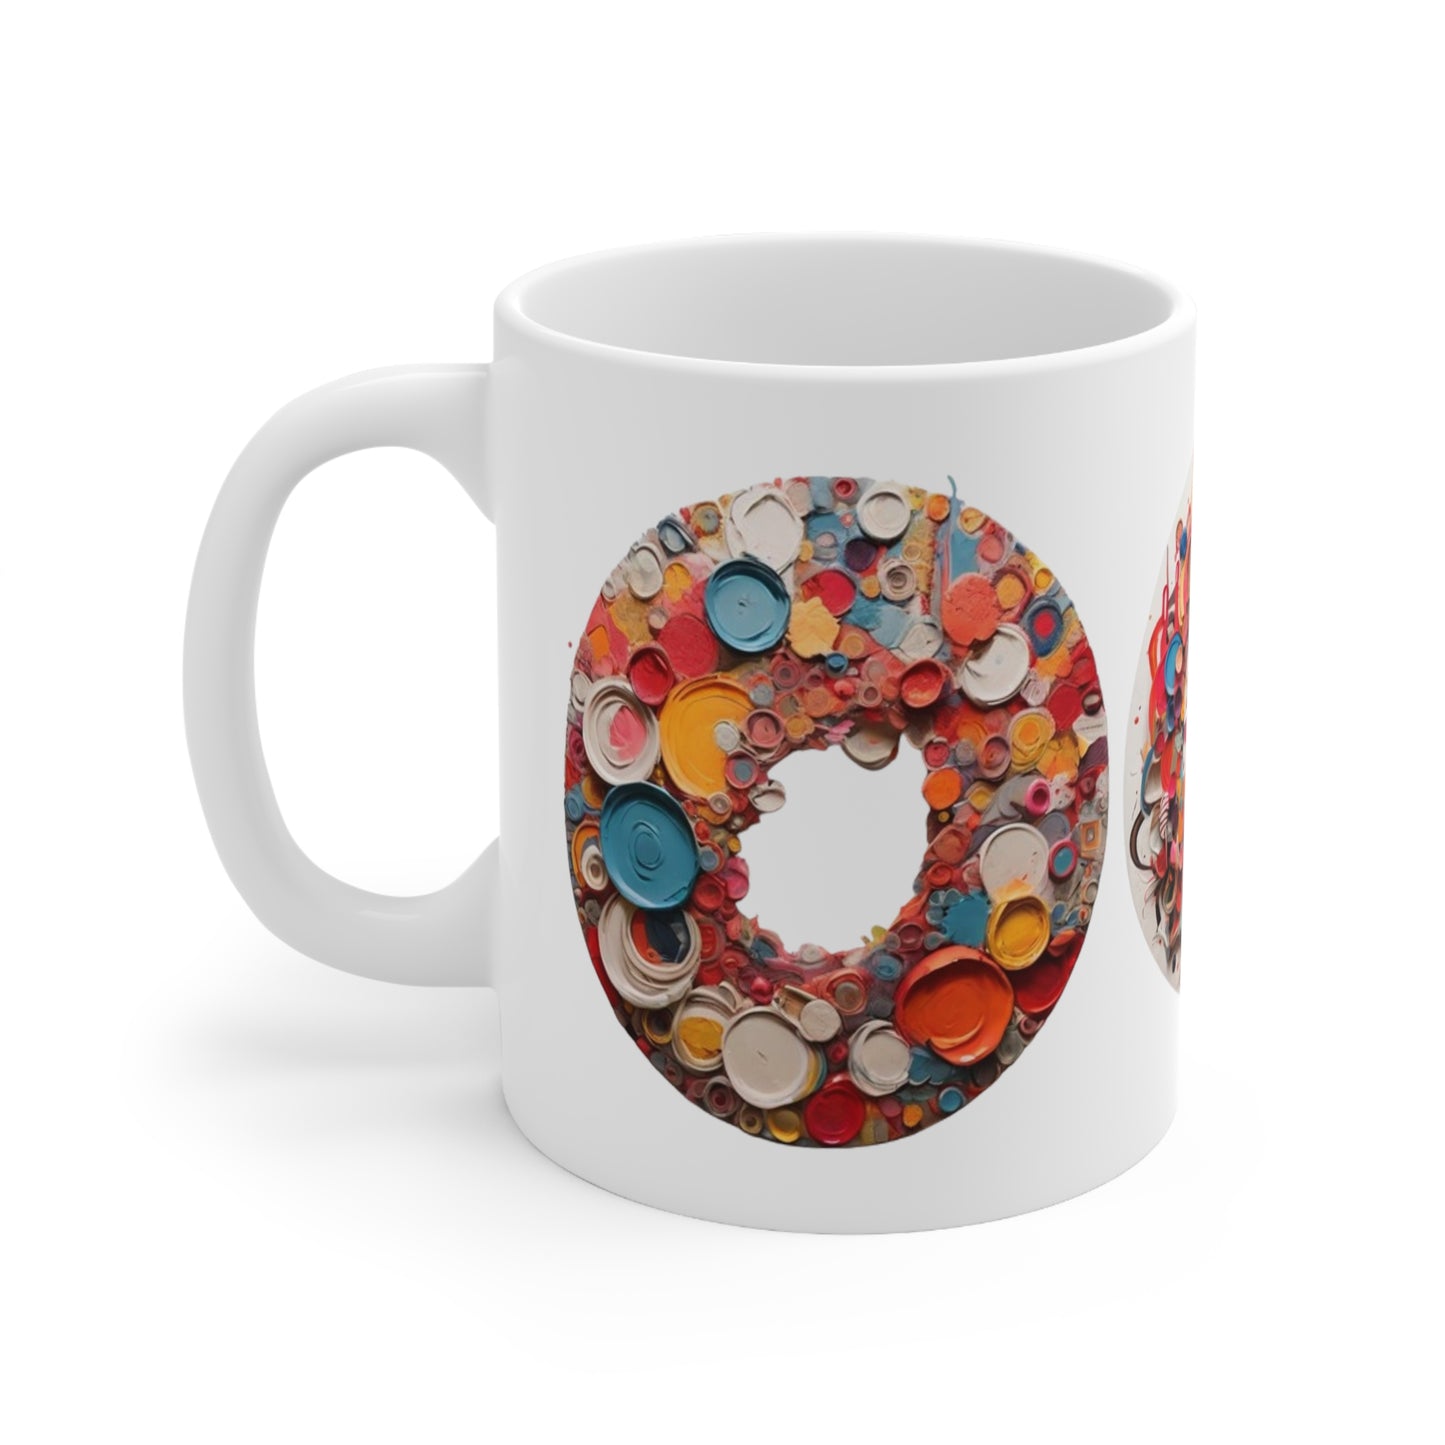 Messy Circle Colourful Paint Mug - Ceramic Coffee Mug 11oz